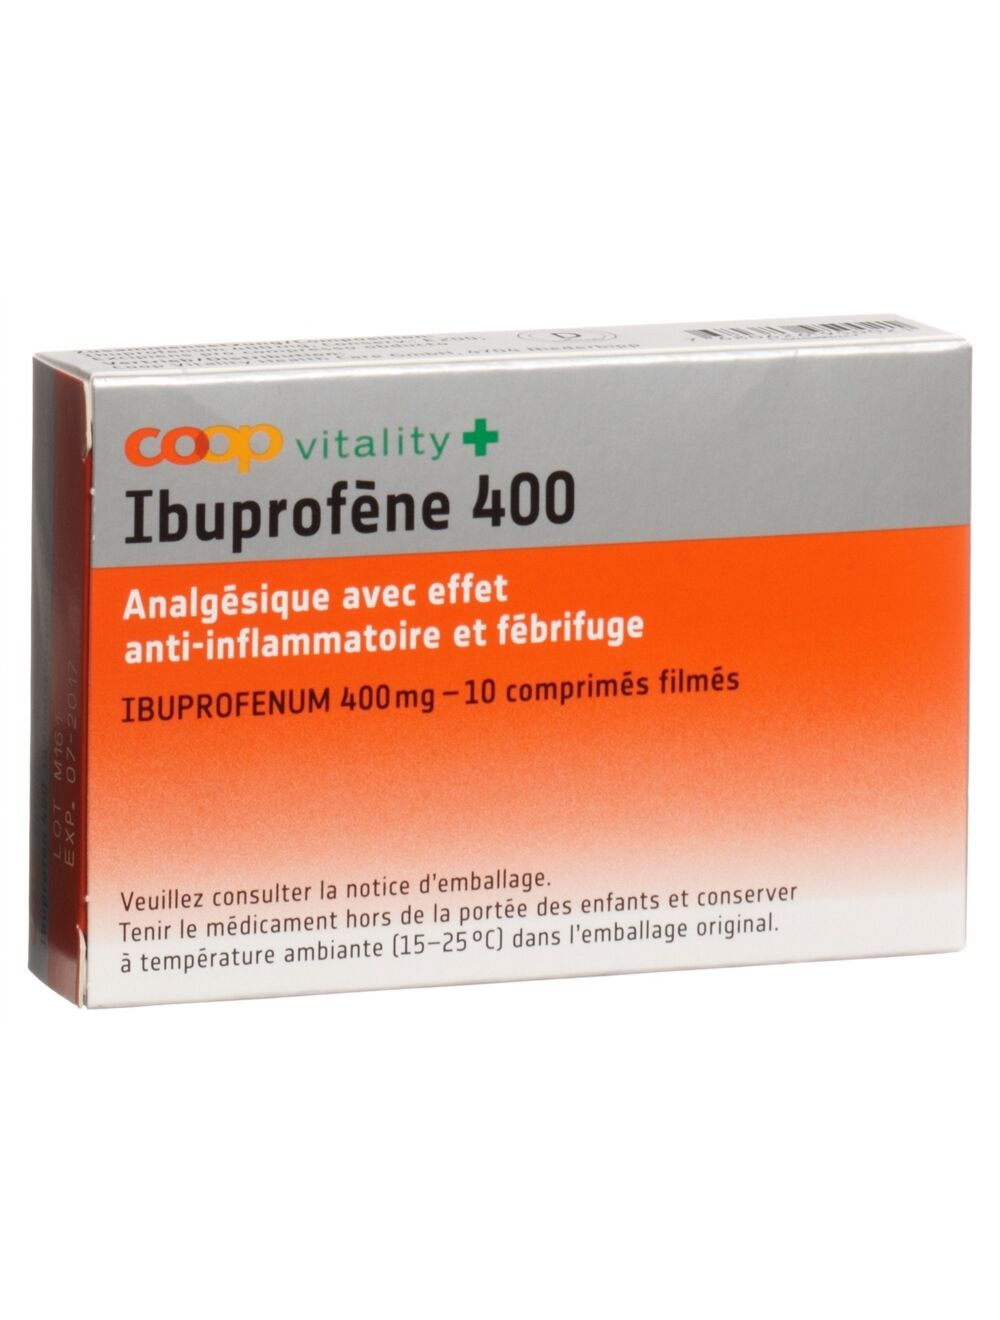 Pantoprazol und ibuprofen zusammen